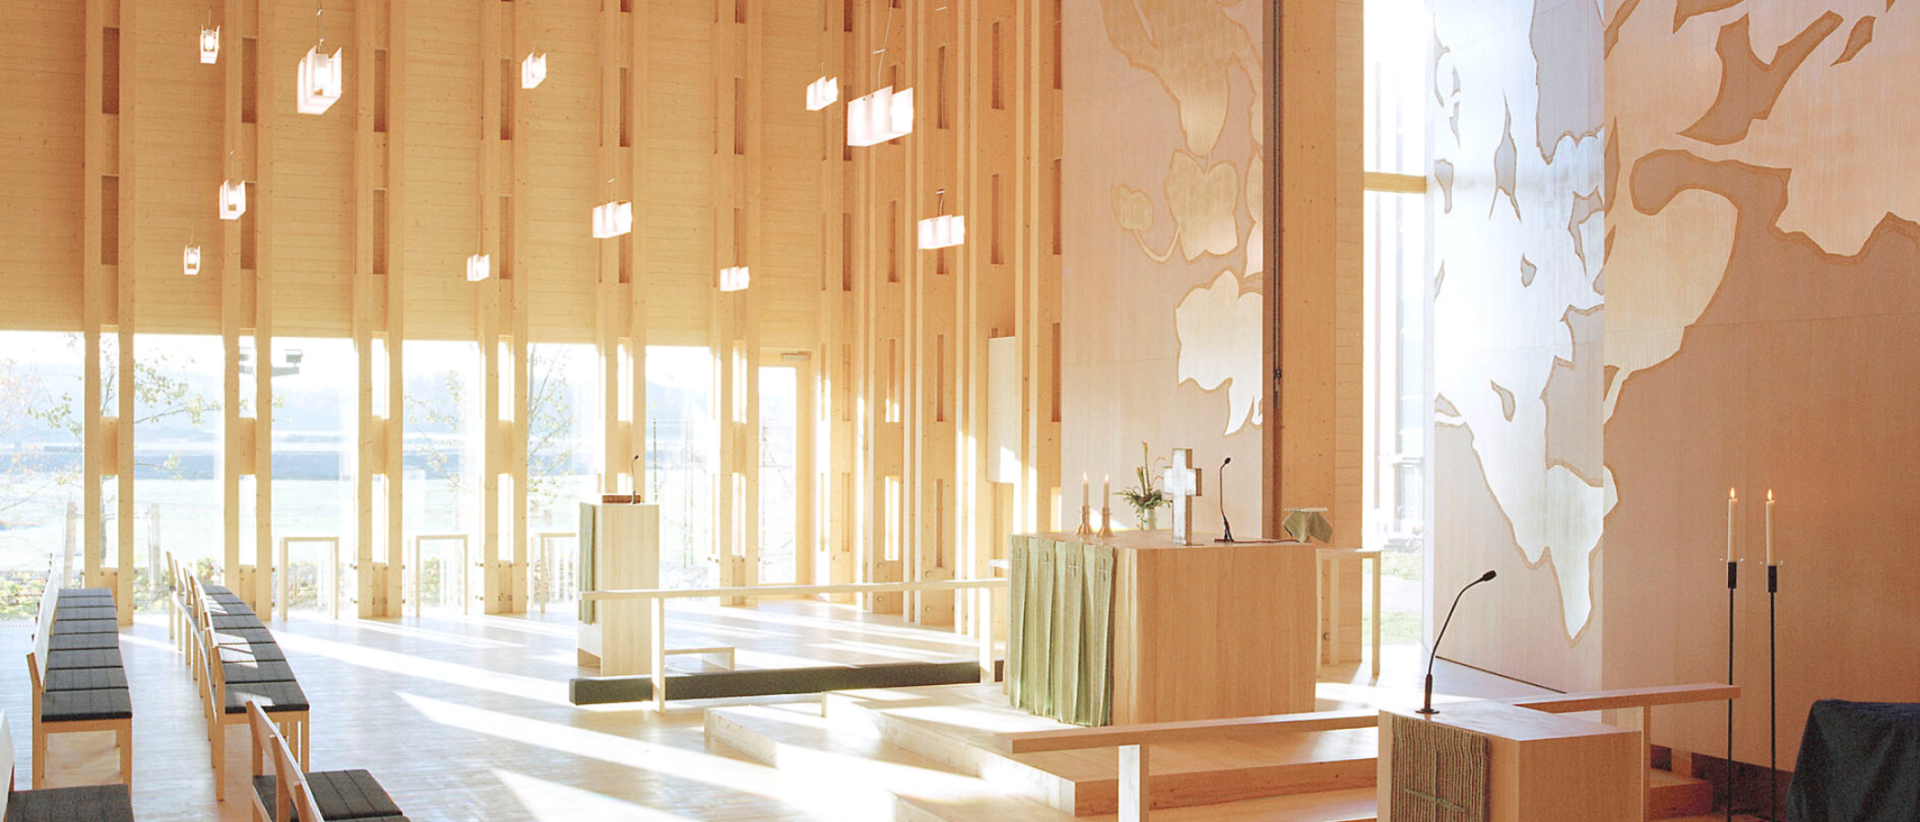 Kuva Viikin kirkon sisätiloista auringonpaisteessa